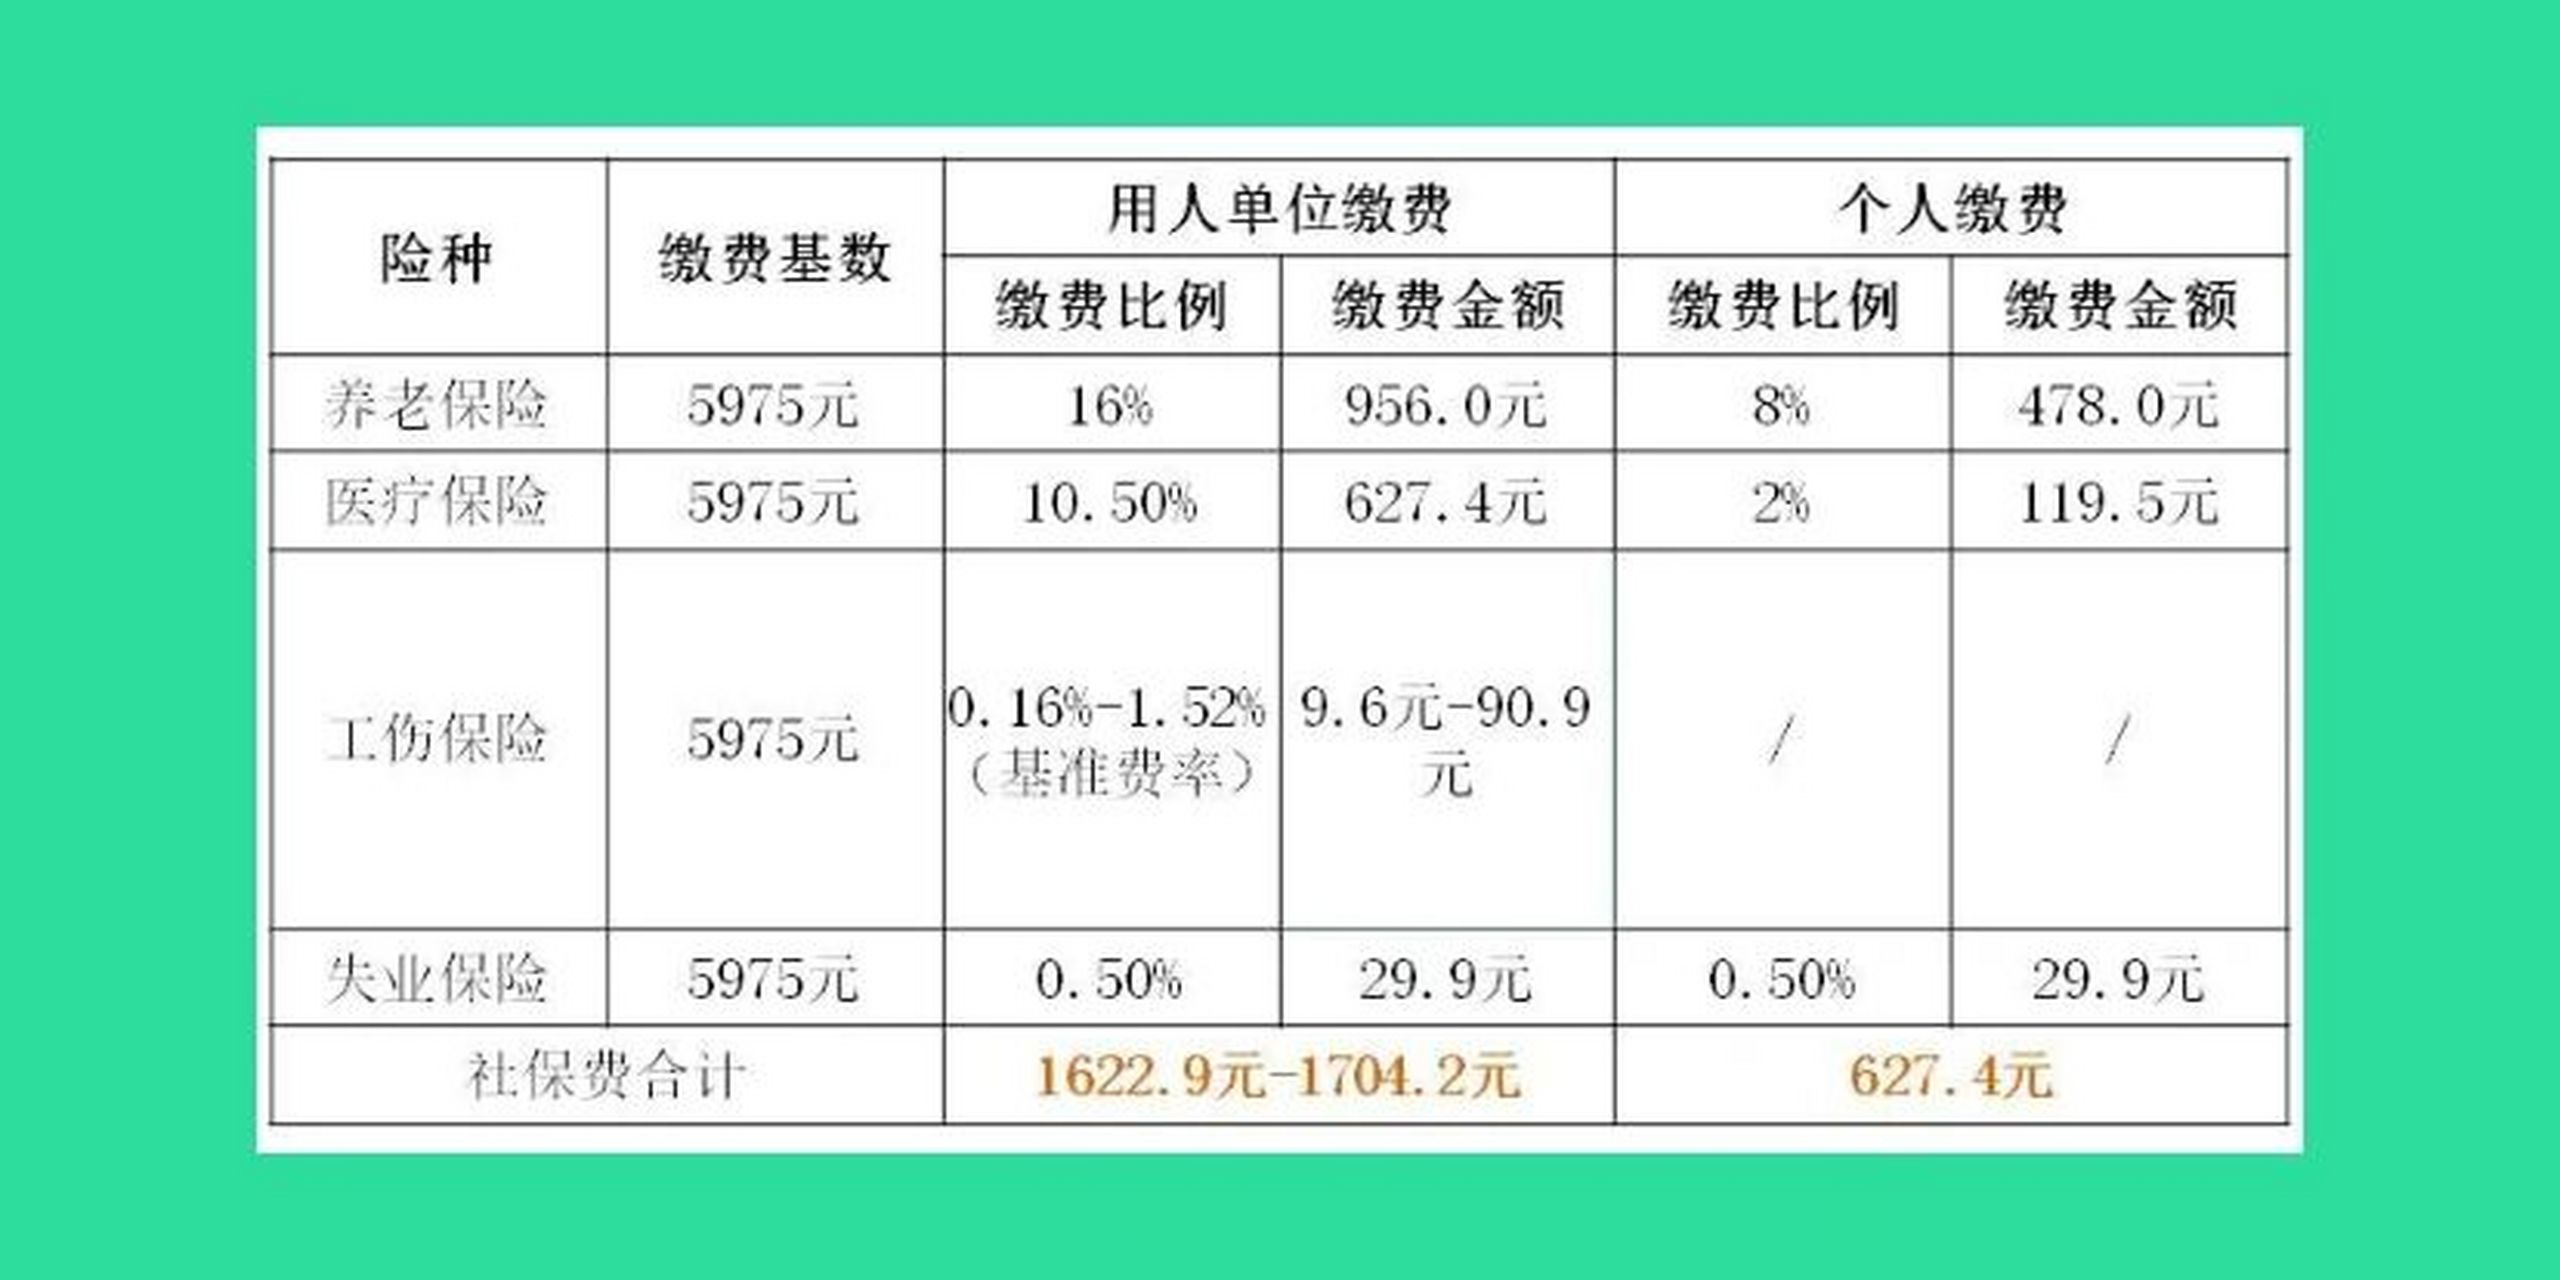 上海社保缴费标准2021 92图一:用人单位及其从业人员92图二:灵活